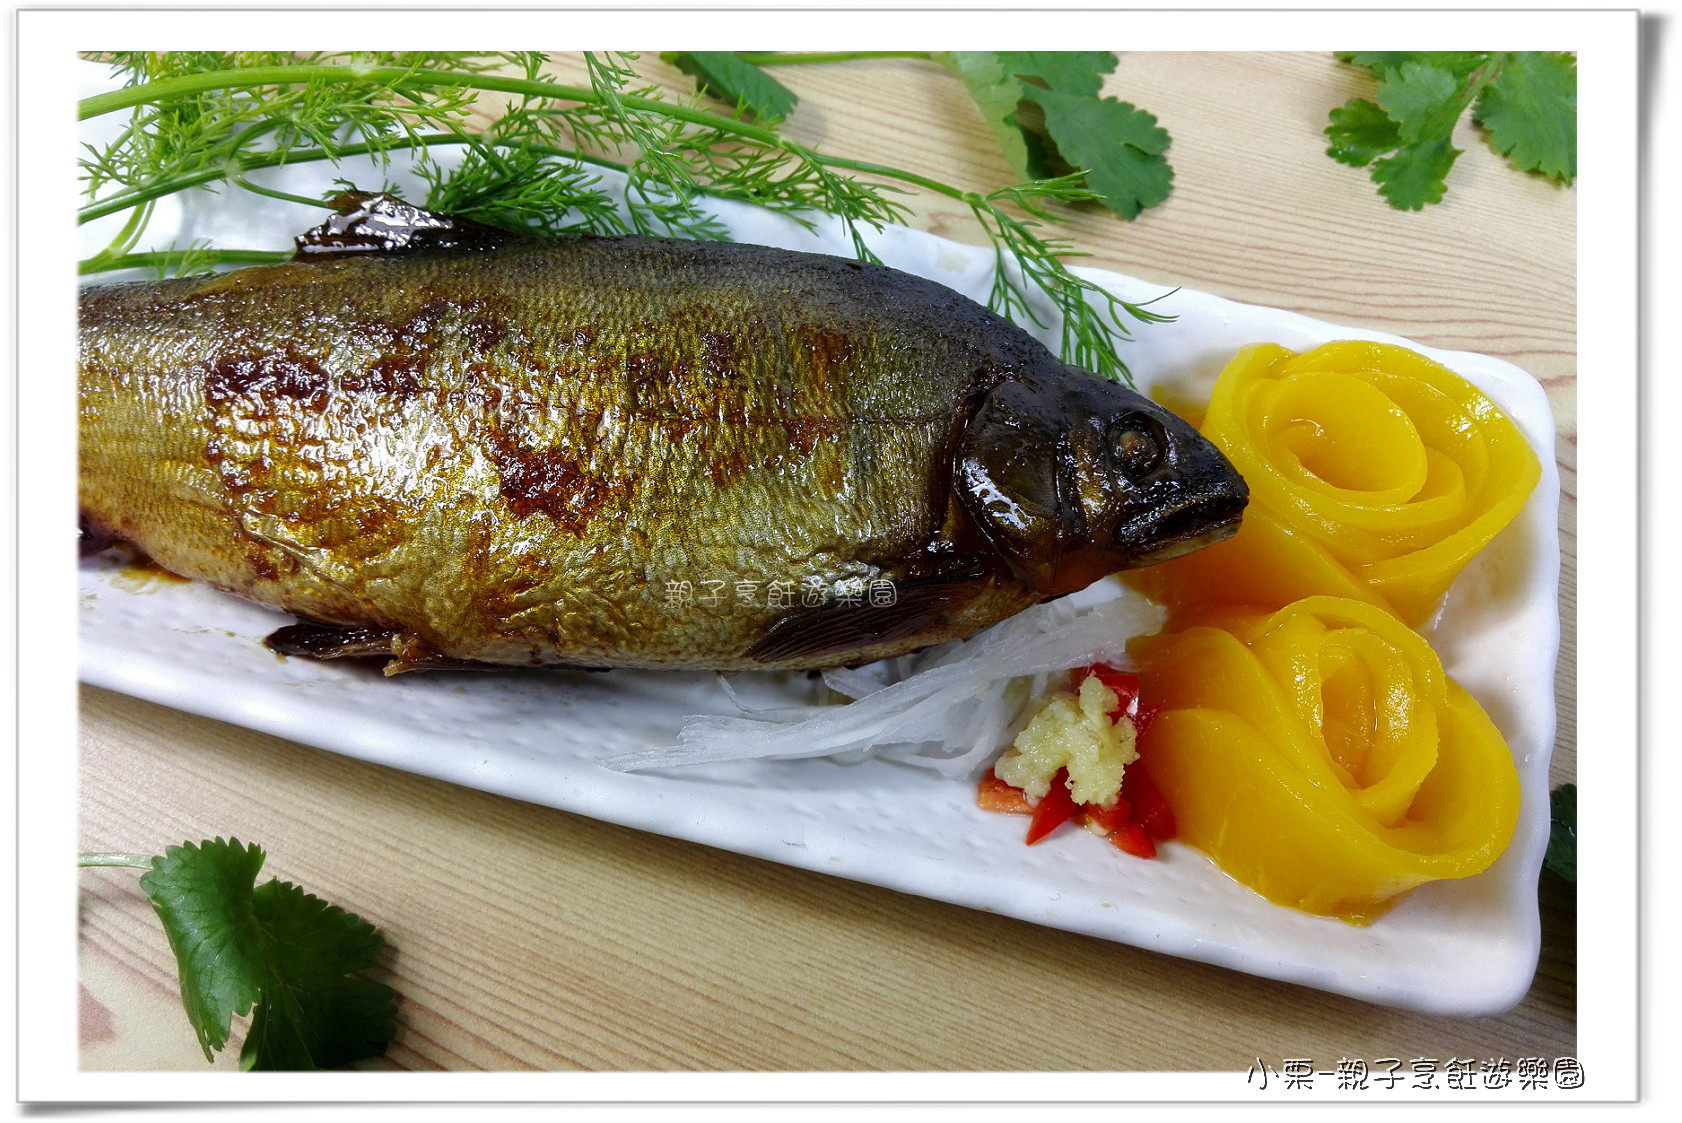 安永鮮物-水蜜桃香魚